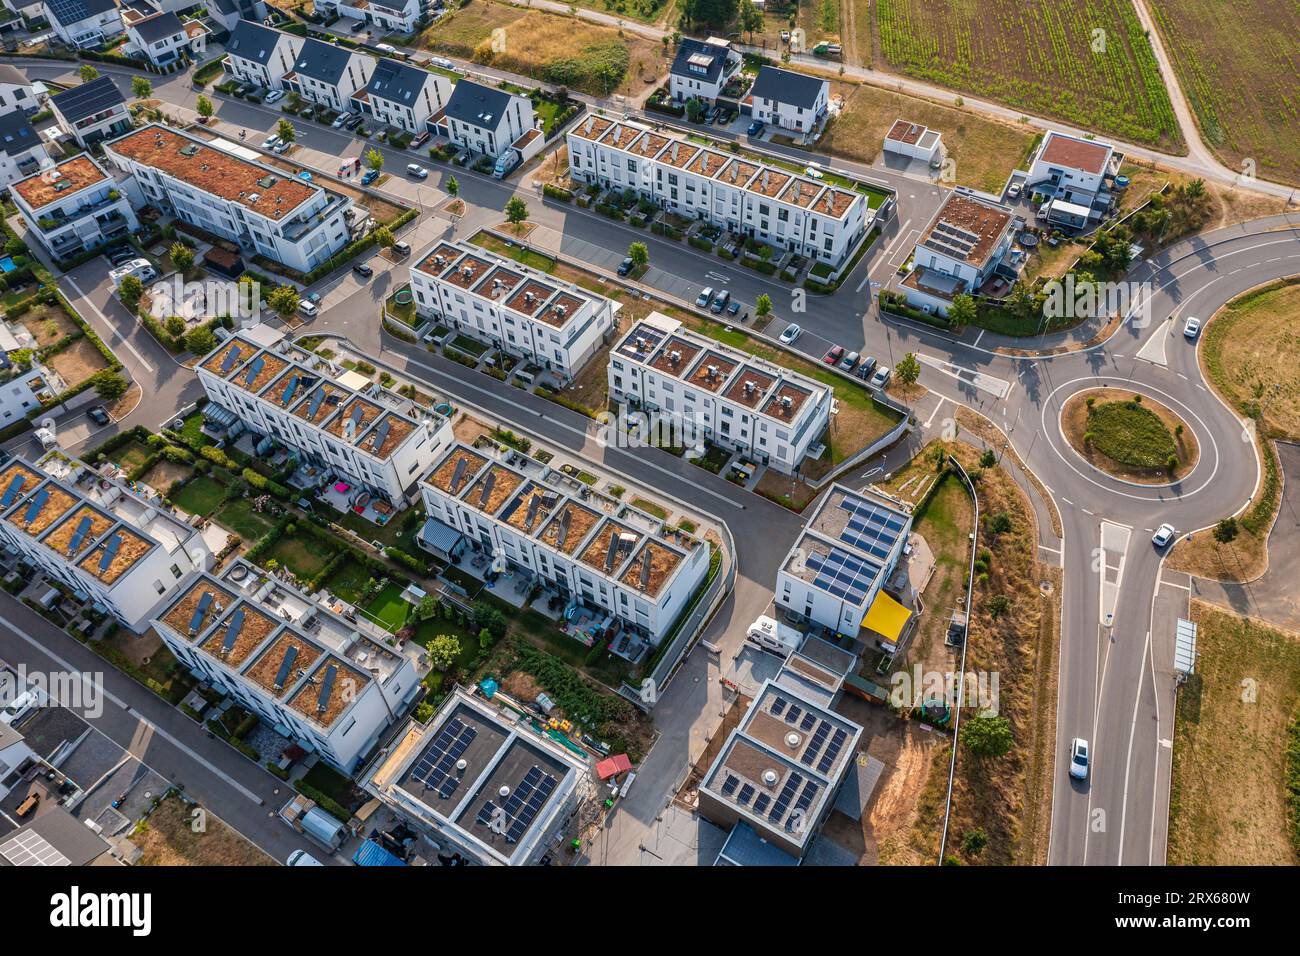 Allemagne, Bade-Wurtemberg, Plochingen, vue aérienne sur les toits des maisons de banlieue modernes Banque D'Images